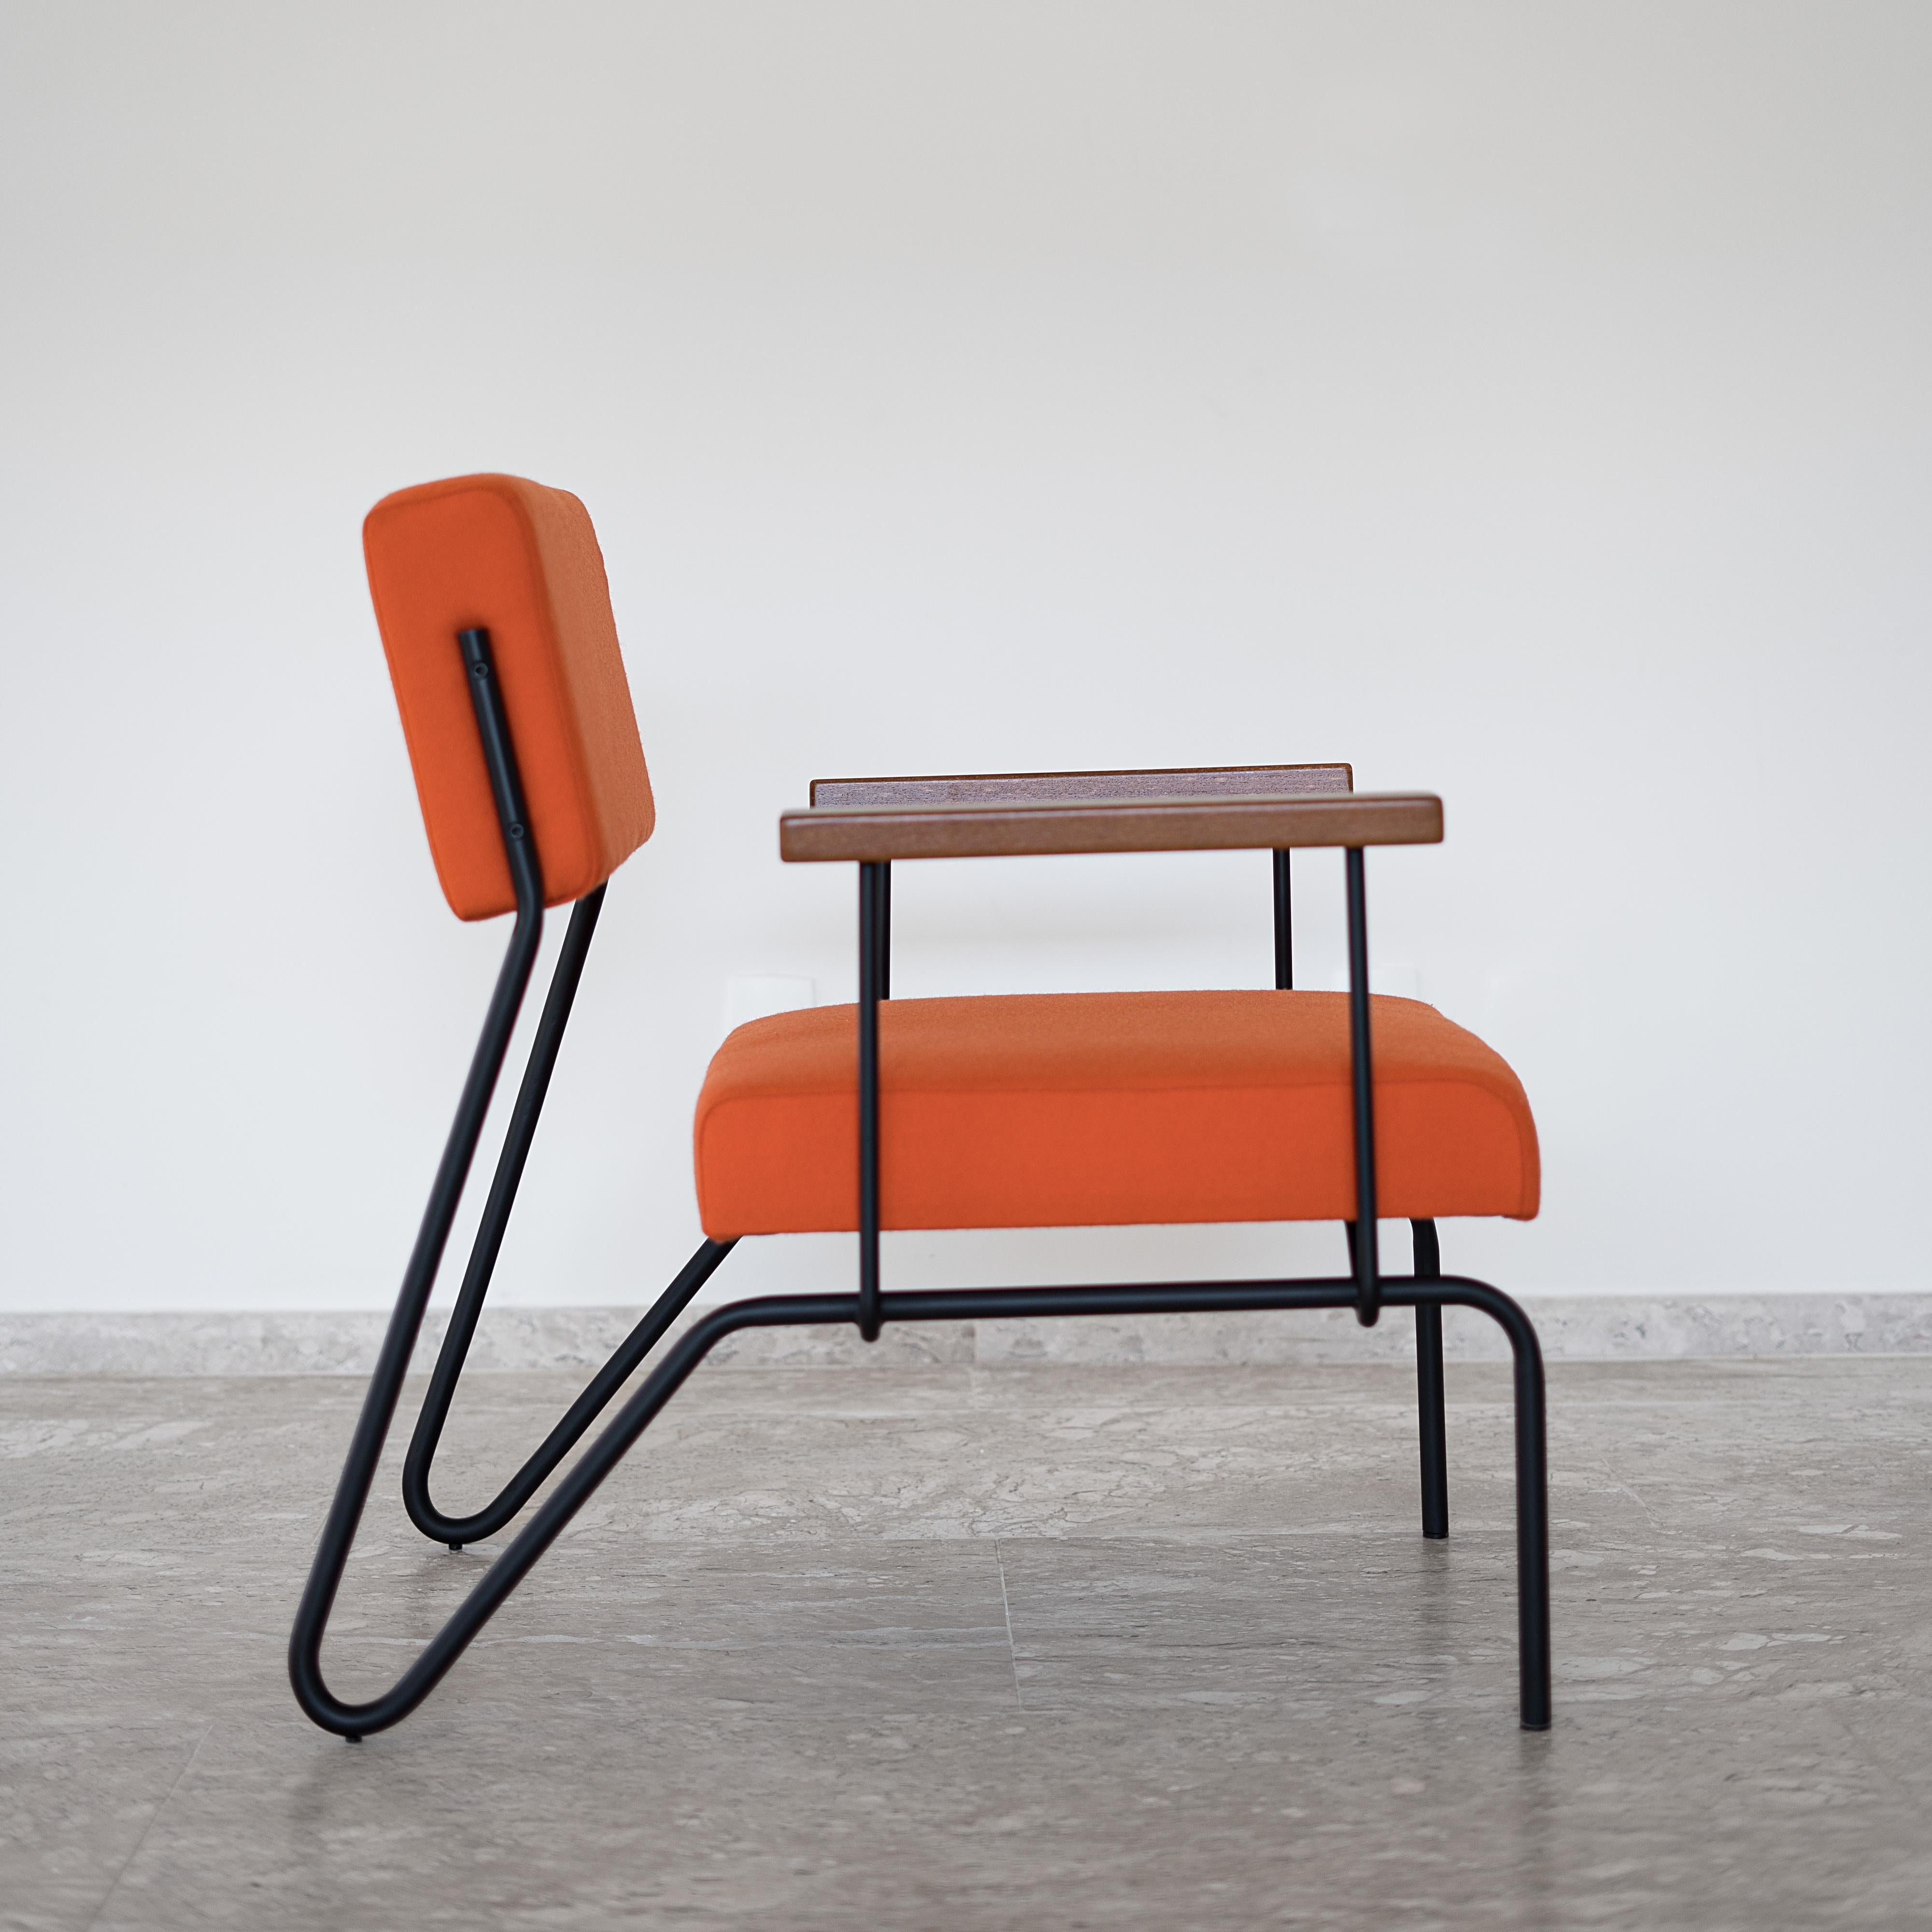 Dieser preisgekrönte minimalistische Sessel aus Stahl, Massivholz und Leder ist mit einem klassischen und geometrischen Grund entworfen. 
Die Kontinuität der strukturellen Linien suggeriert Fluidität. Die Rückenlehne ermöglicht eine glatte Bewegung